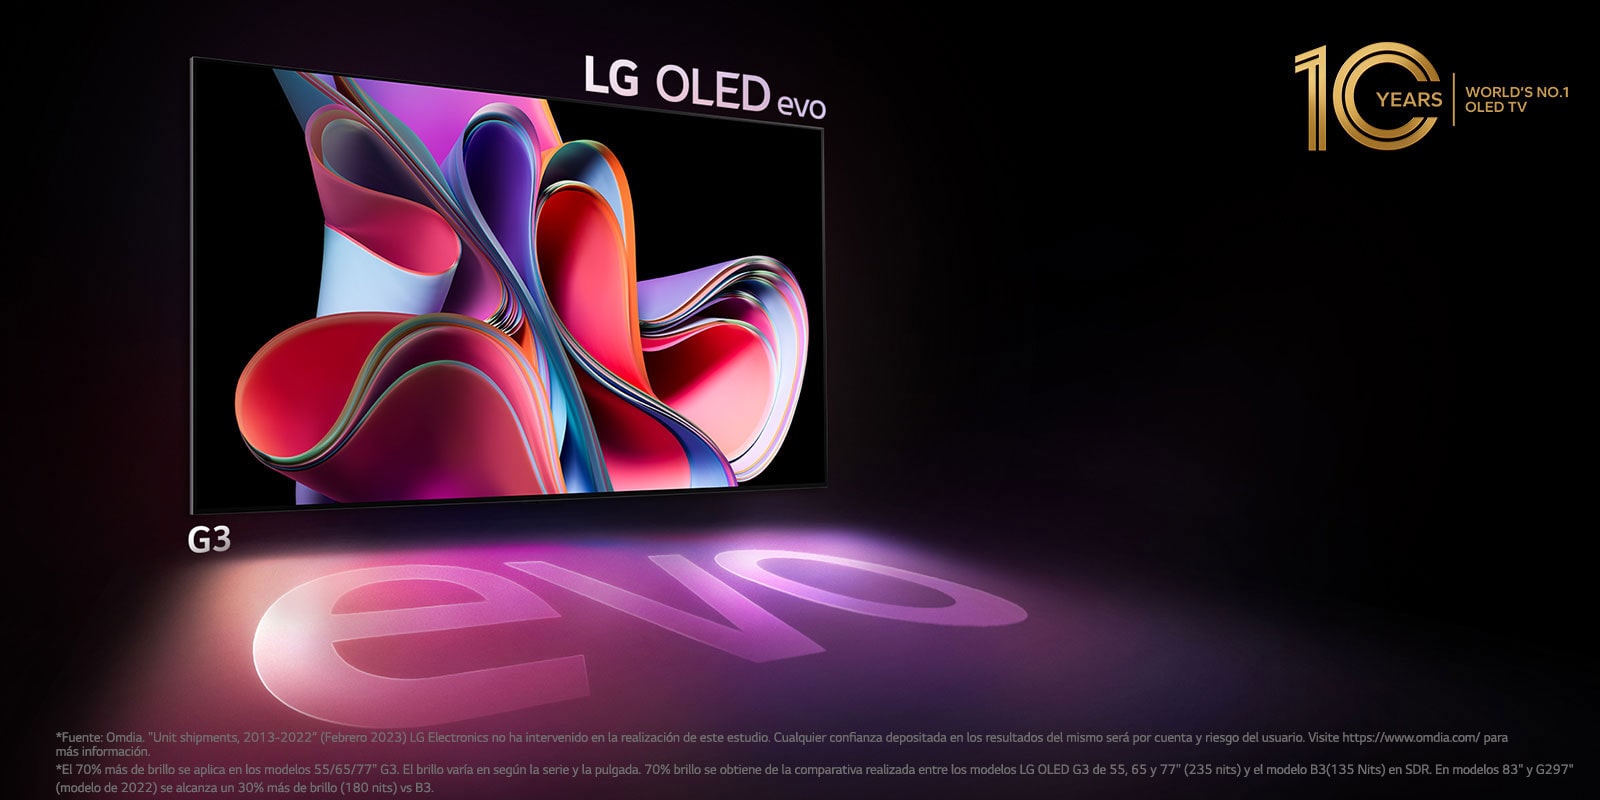 Una imagen del LG OLED G3 sobre un fondo negro que muestra una brillante ilustración abstracta de color rosa y morado. La pantalla proyecta una colorida sombra en la que aparece la palabra "evo".